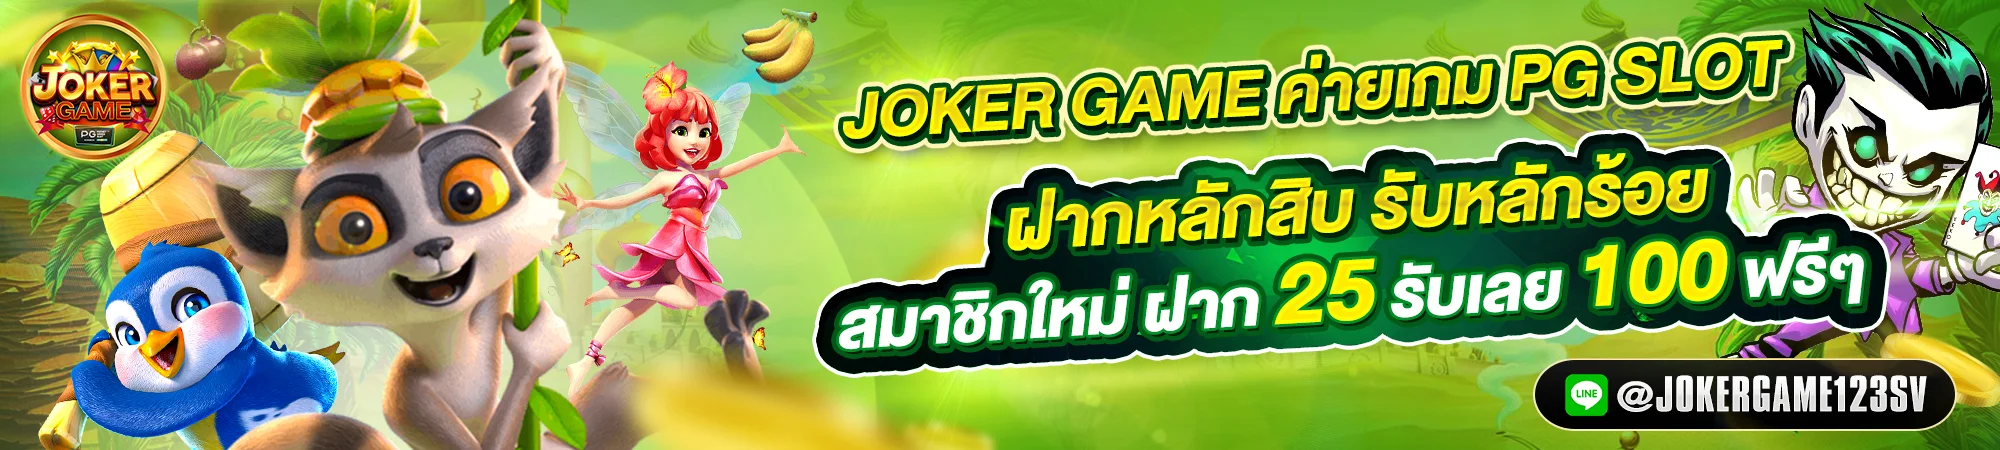 JokerGame123